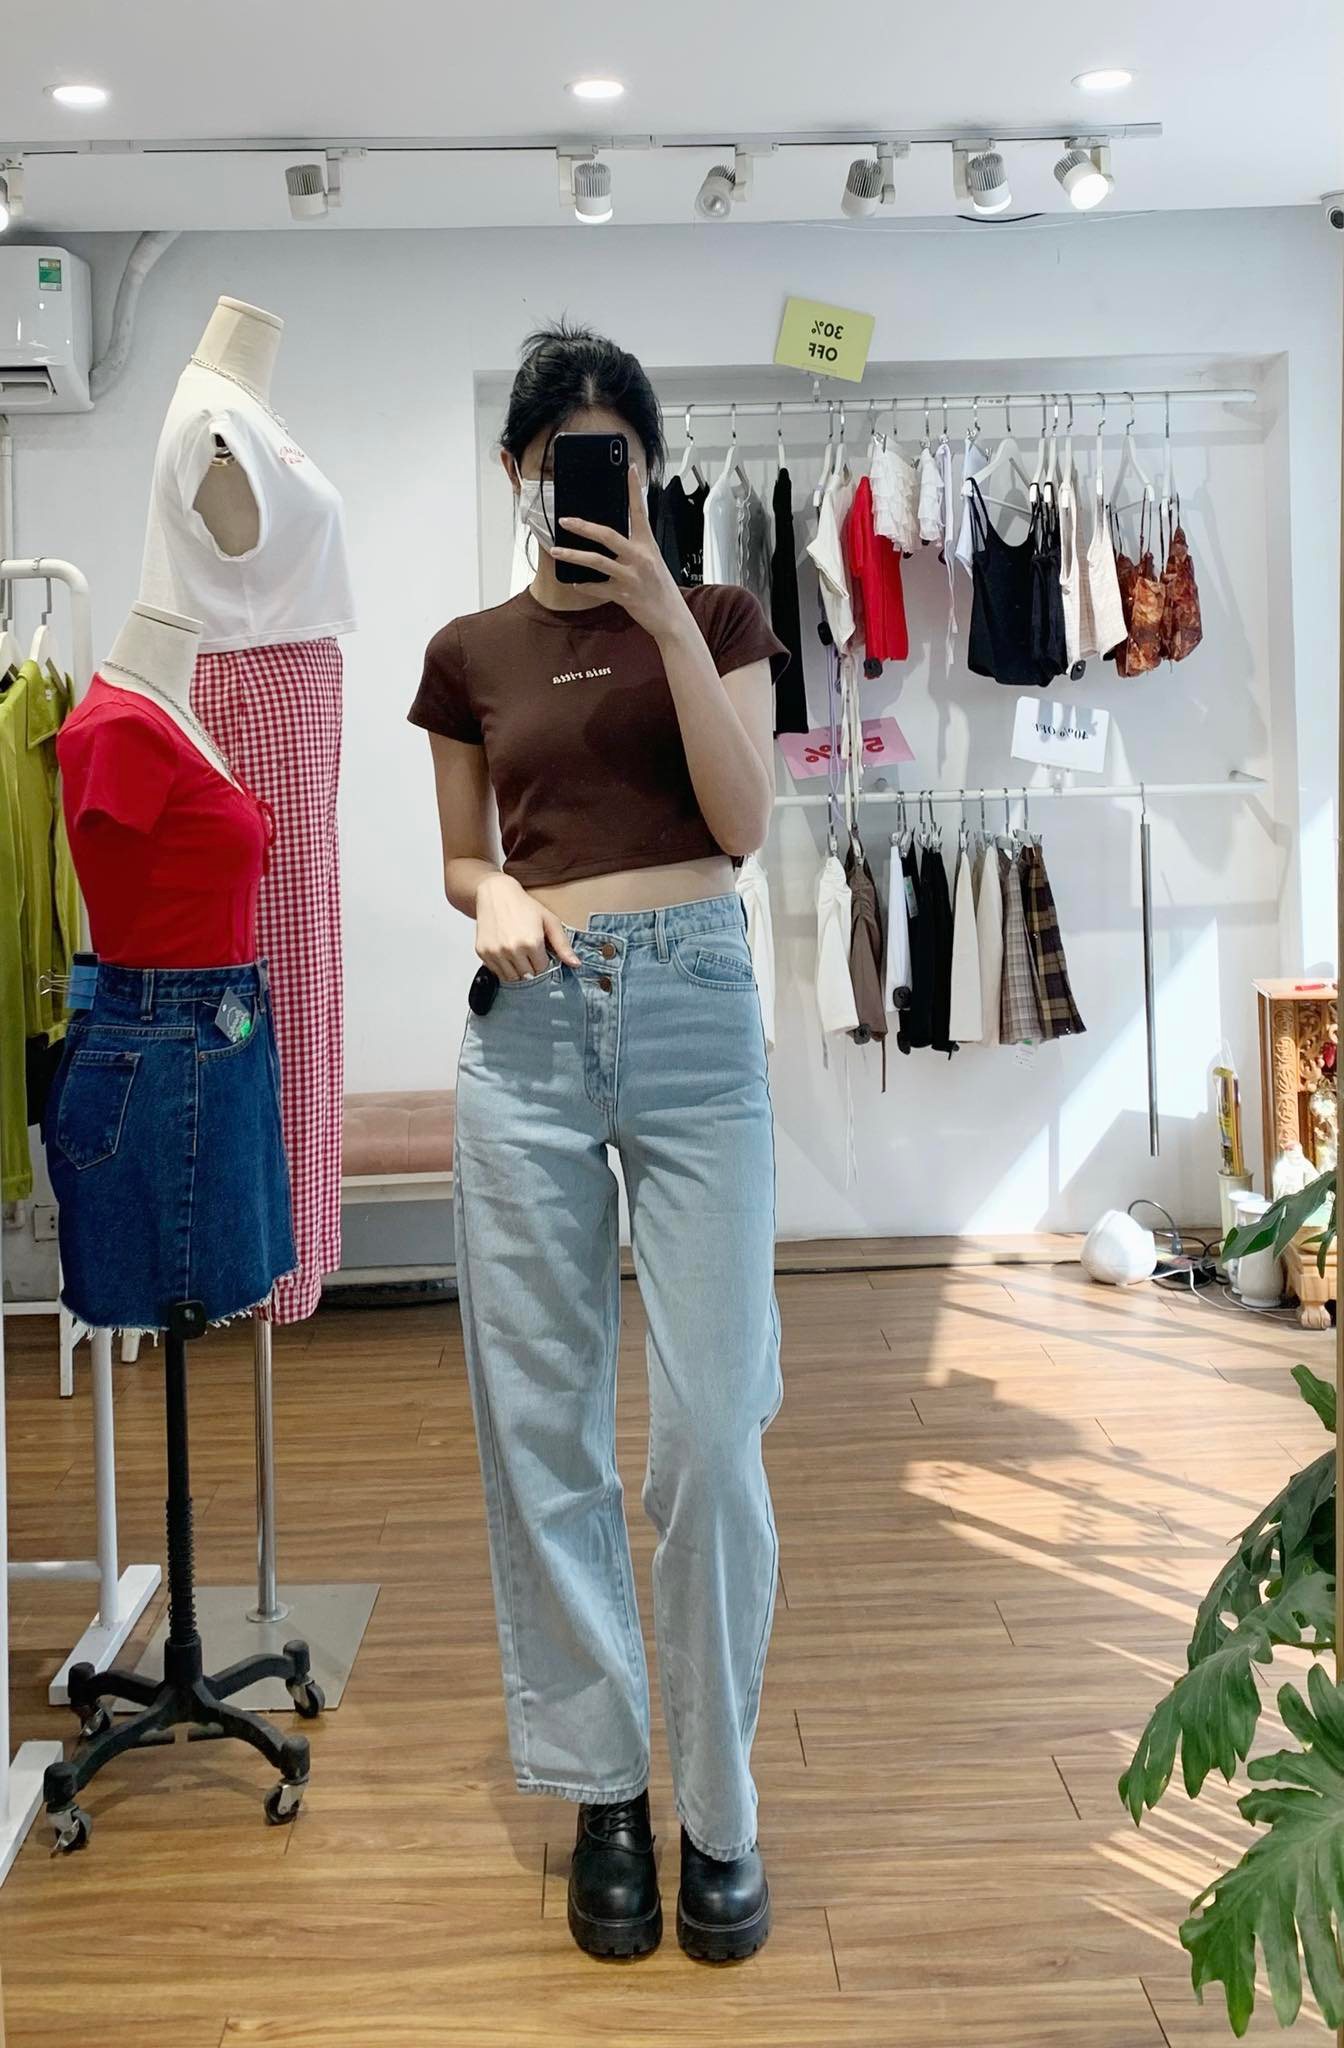 Ghé các shop bán quần jeans ở Hà Nội, mình gom được 10 mẫu đáng mua: Vừa kéo chân lại ăn gian vòng 3 siêu đỉnh - Ảnh 9.